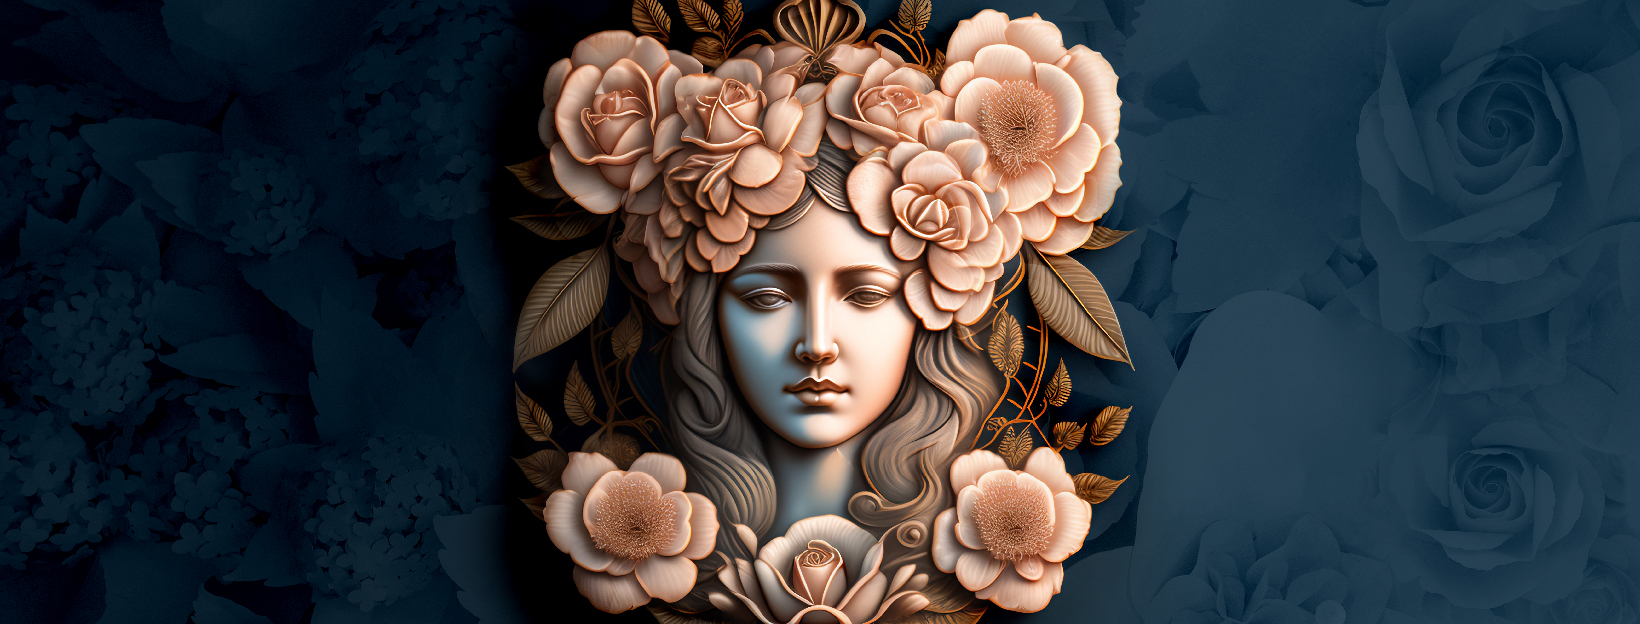 Aphrodite et les roses blog couverture